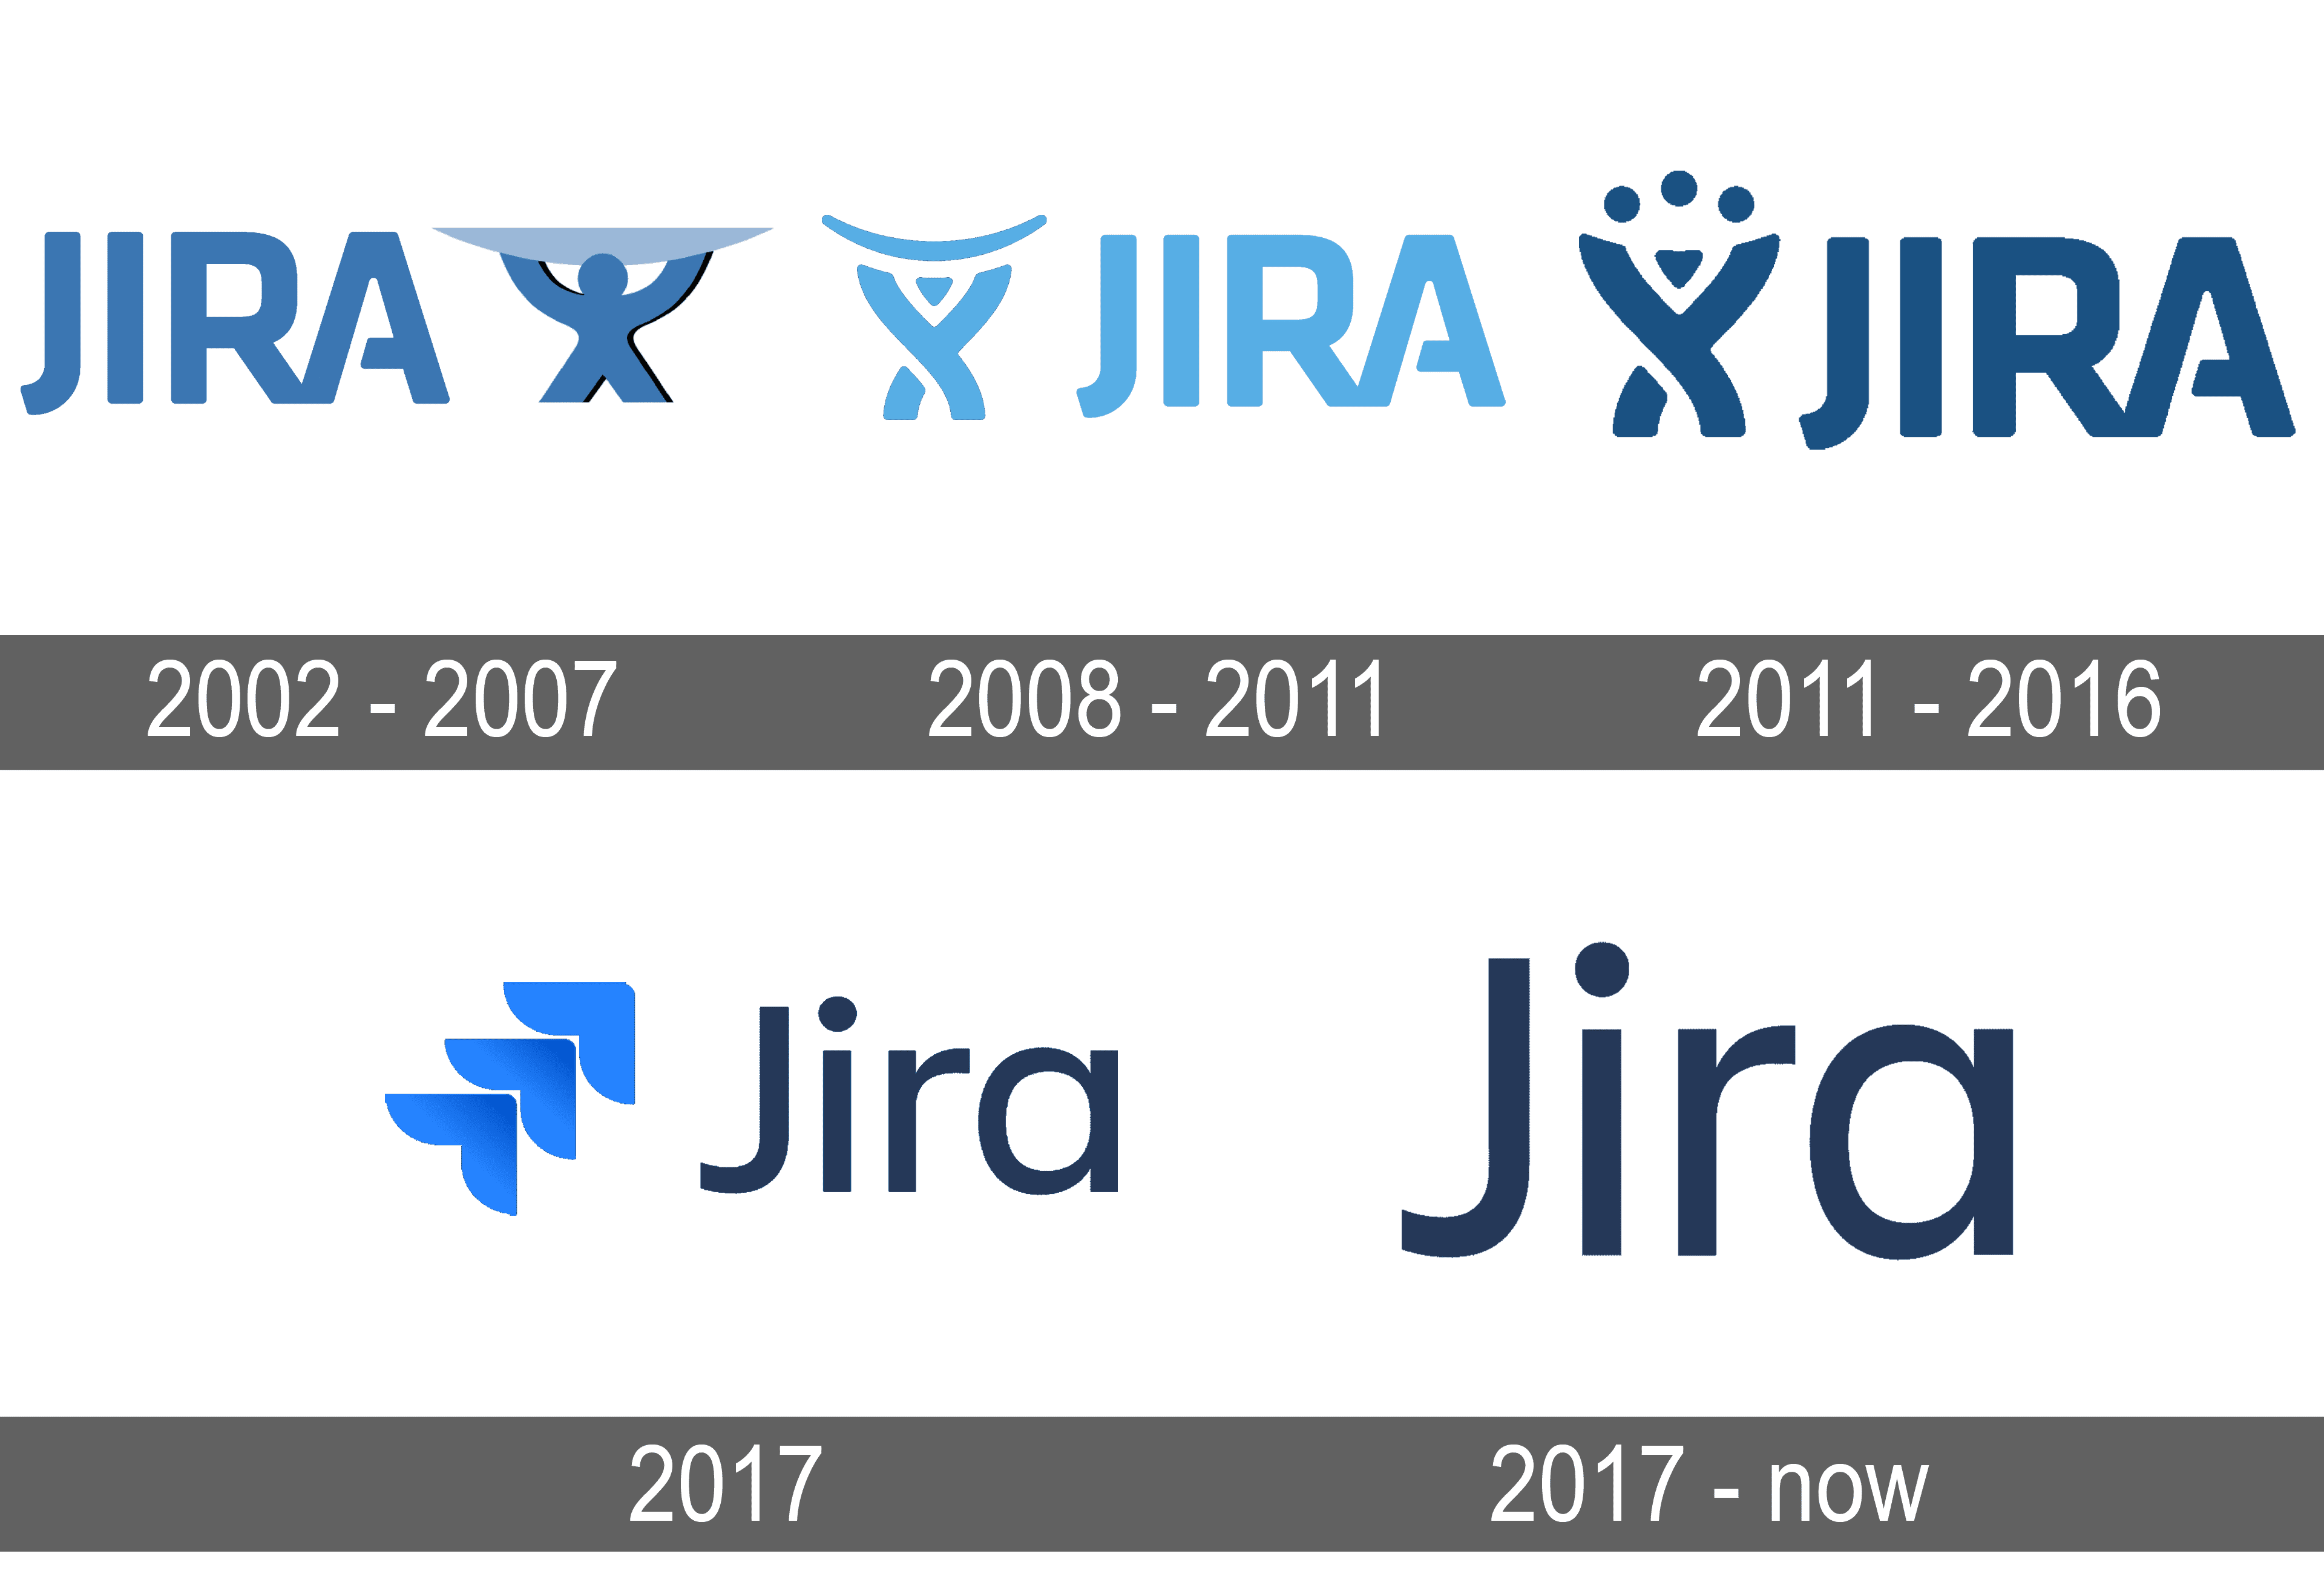 Jira Logo PNG Image File